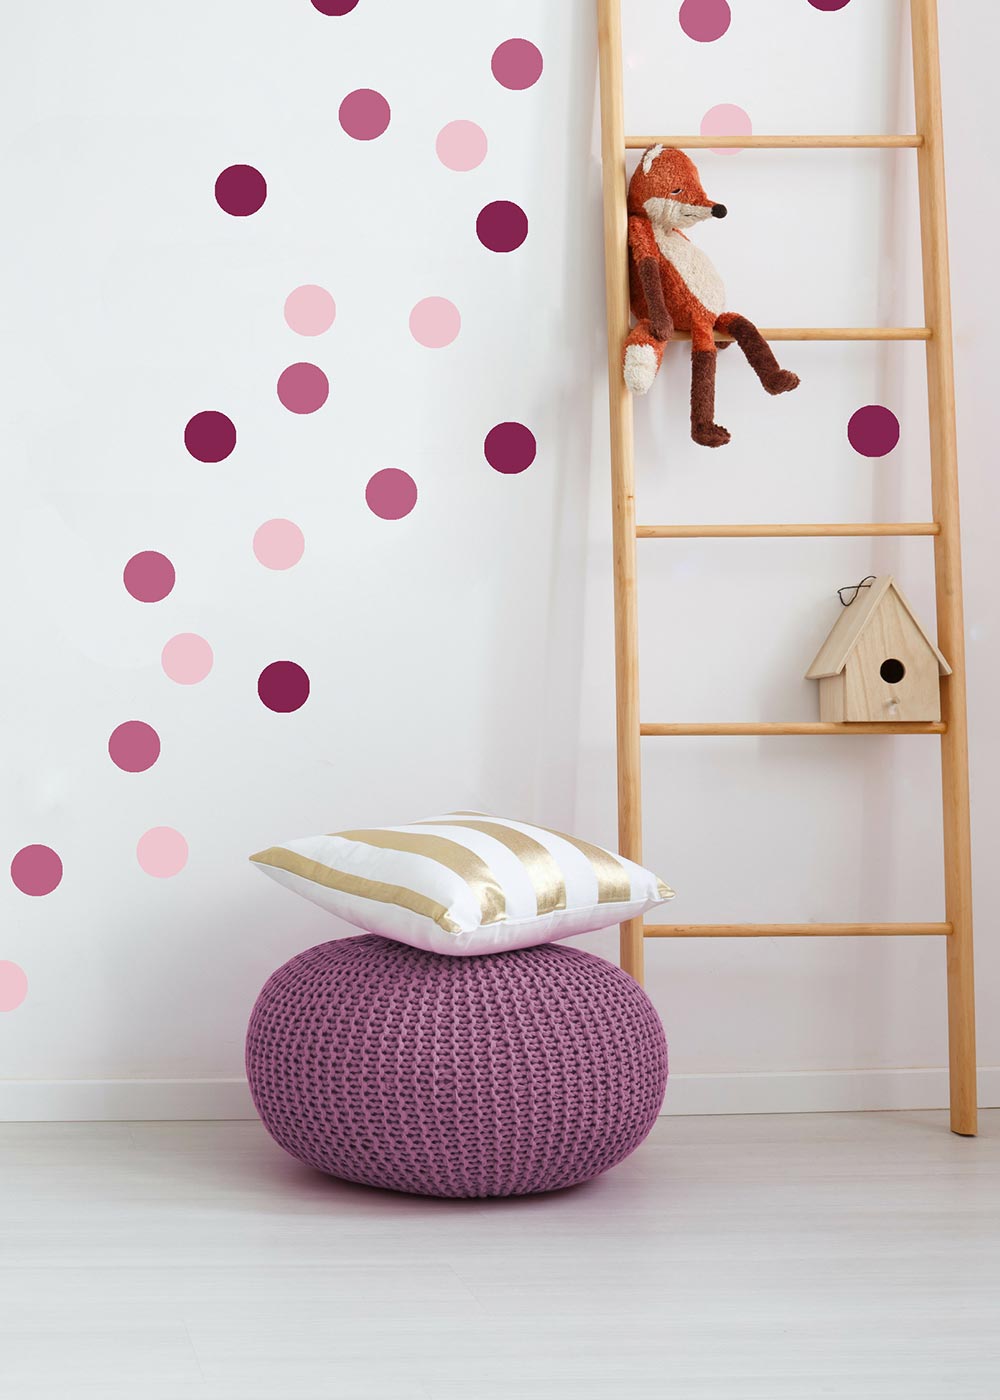 Stickerset Polka dots rosa Beispiel Kinderzimmer Kuscheltier